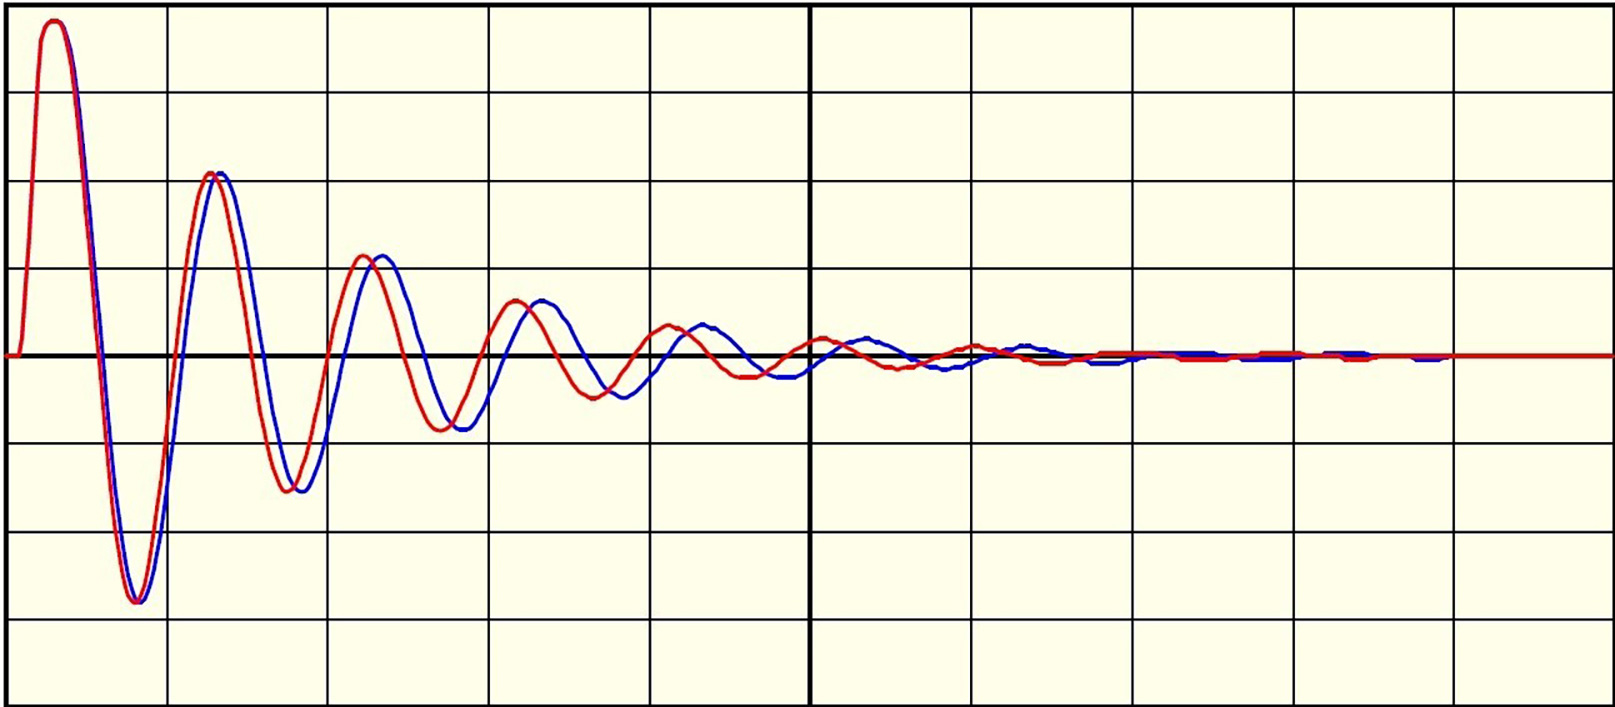 图3:如果电机因为电弧或短路而失去一个回合，波形的频率会增加，使其看起来向左移动。在这个失败的脉冲对脉冲测试中，蓝色波来自弧前的脉冲，红色波来自弧后的脉冲。